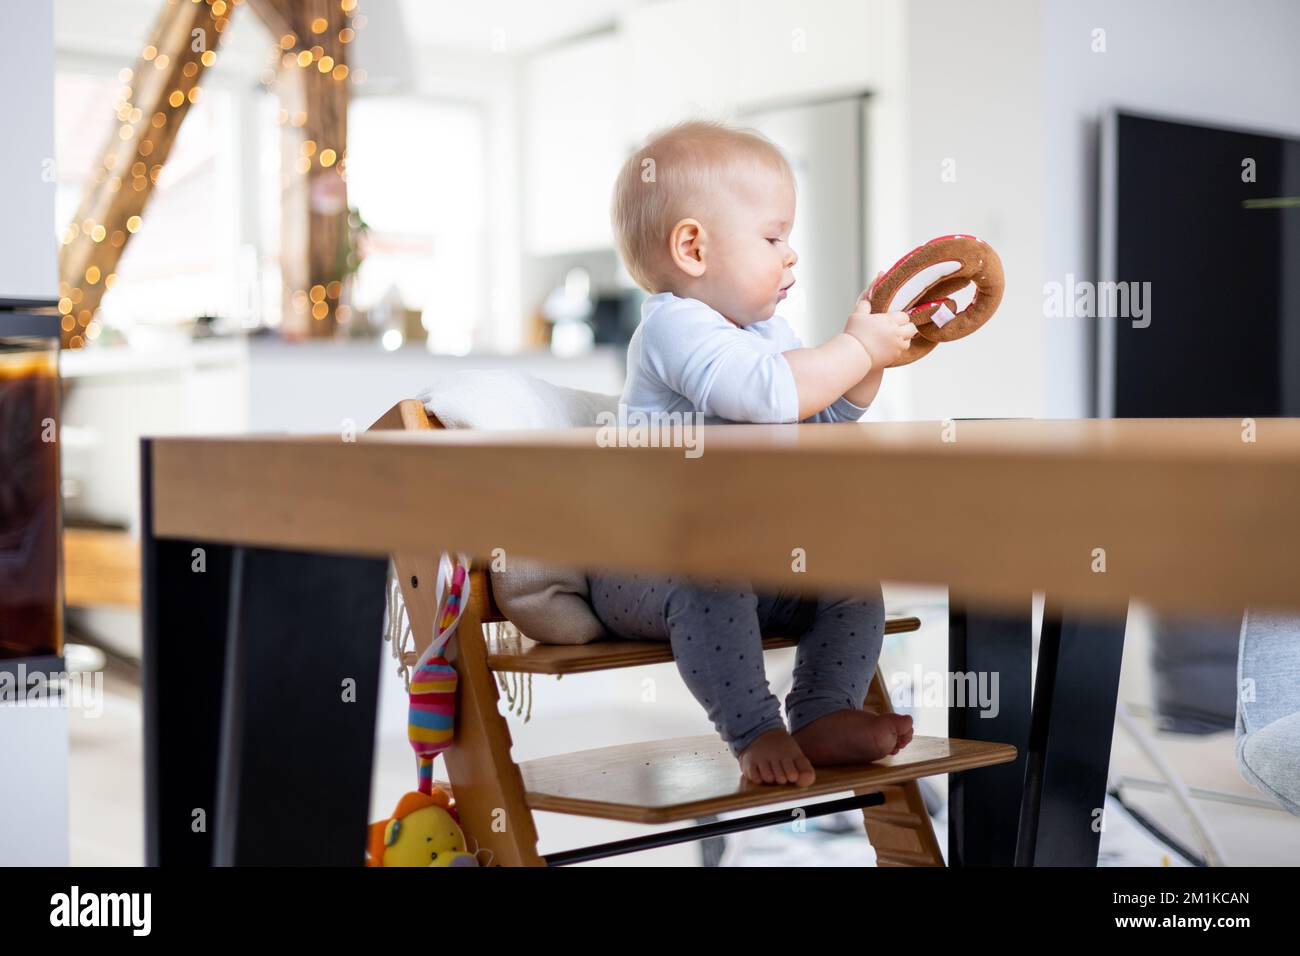 Glückliches Kind sitzt am Esstisch und spielt mit seinem Spielzeug in einem traditionellen skandinavischen Designer-Hochstuhl aus Holz in einem modernen, hellen Wohnhaus. Süßes Baby, das mit Spielzeug spielt. Stockfoto